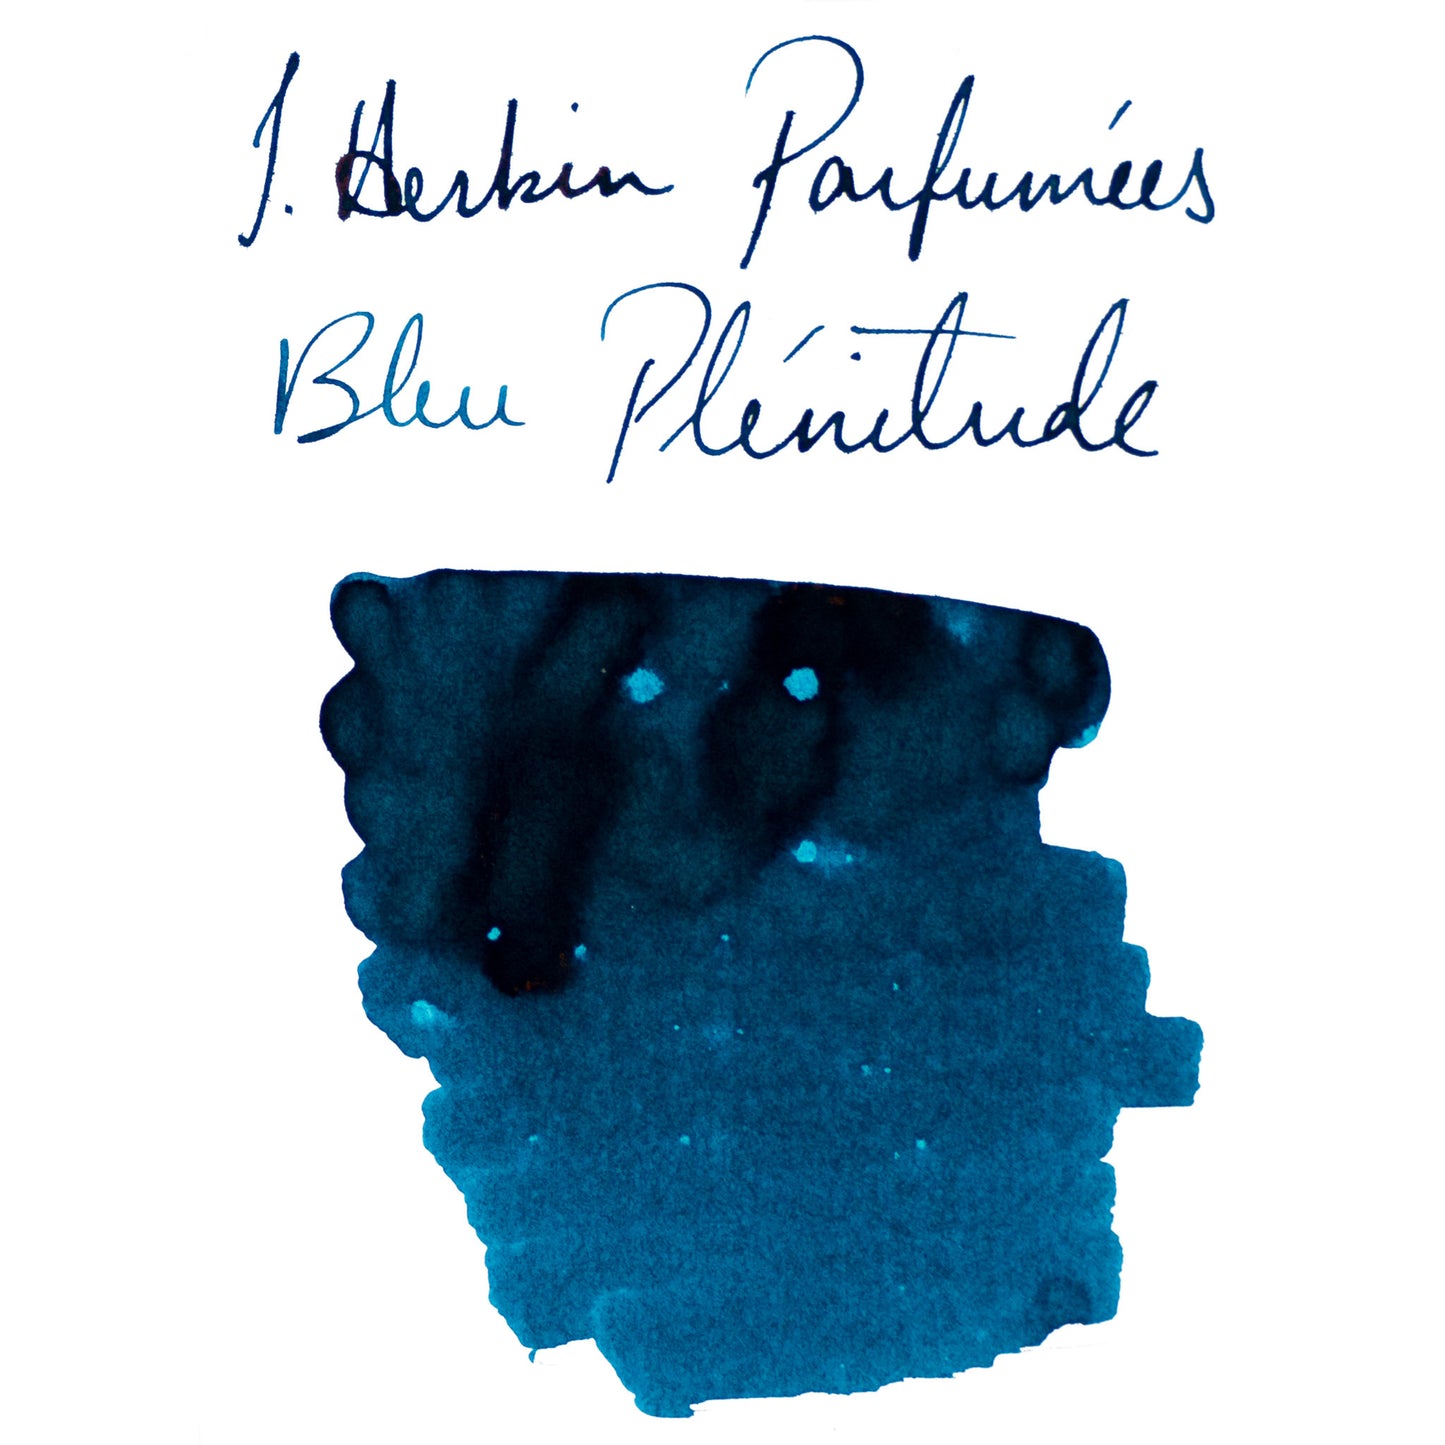 Jacques Herbin Scented Bleu Plénitude Bottled Ink - 50ml